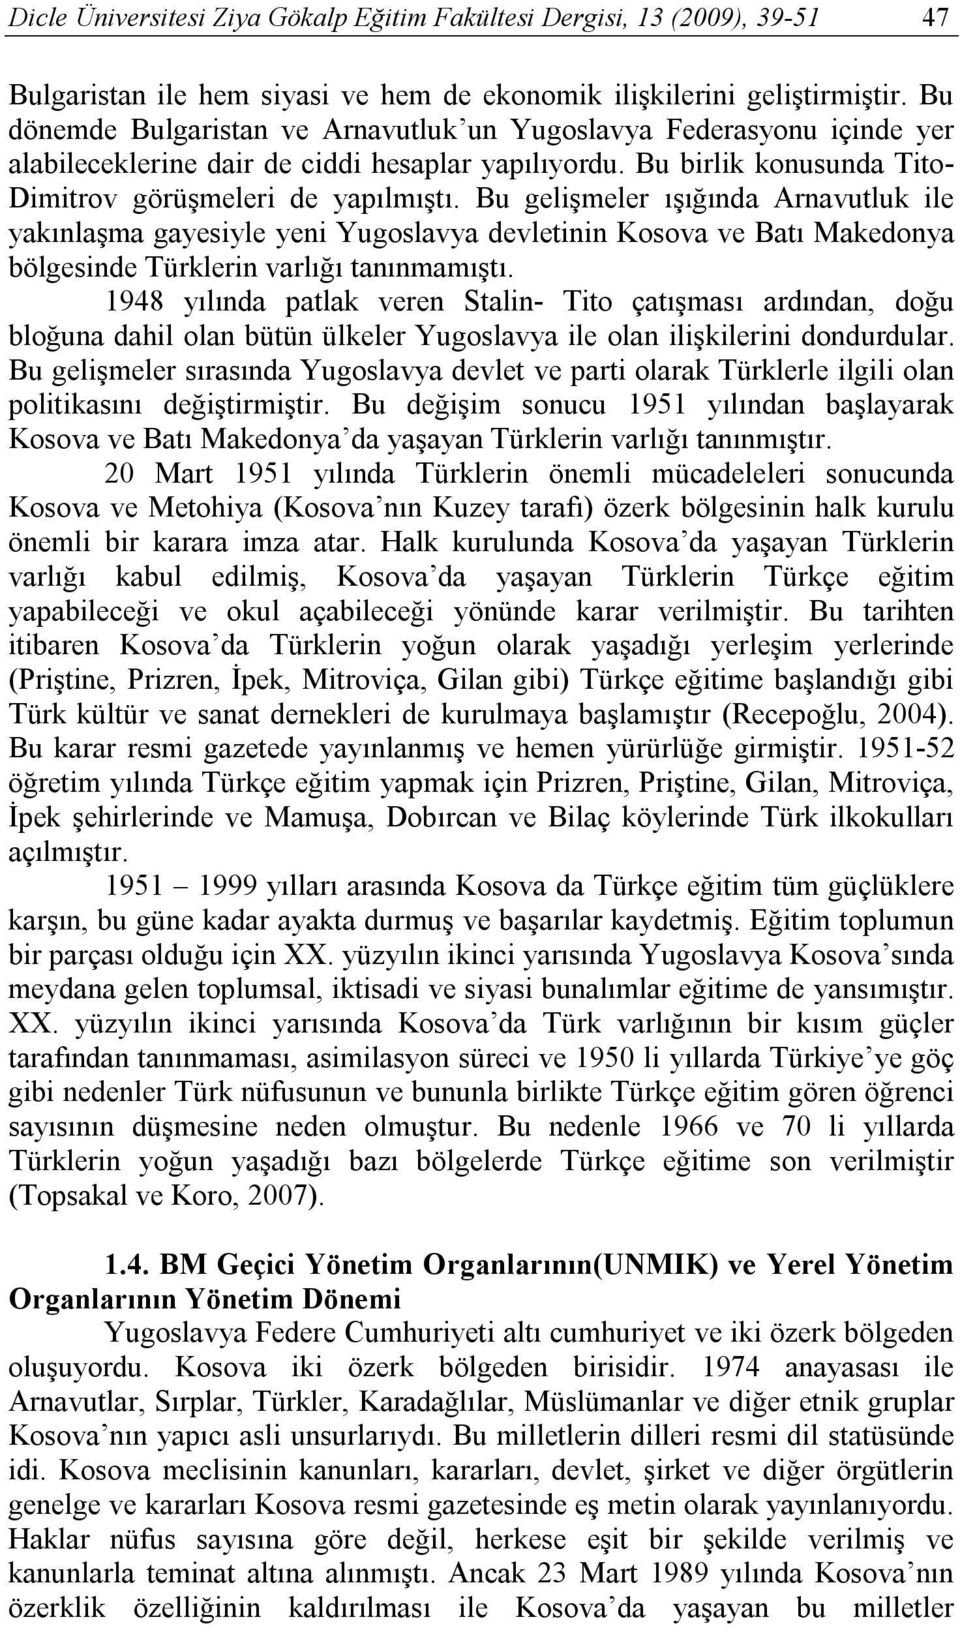 Bu gelişmeler ışığında Arnavutluk ile yakınlaşma gayesiyle yeni Yugoslavya devletinin Kosova ve Batı Makedonya bölgesinde Türklerin varlığı tanınmamıştı.